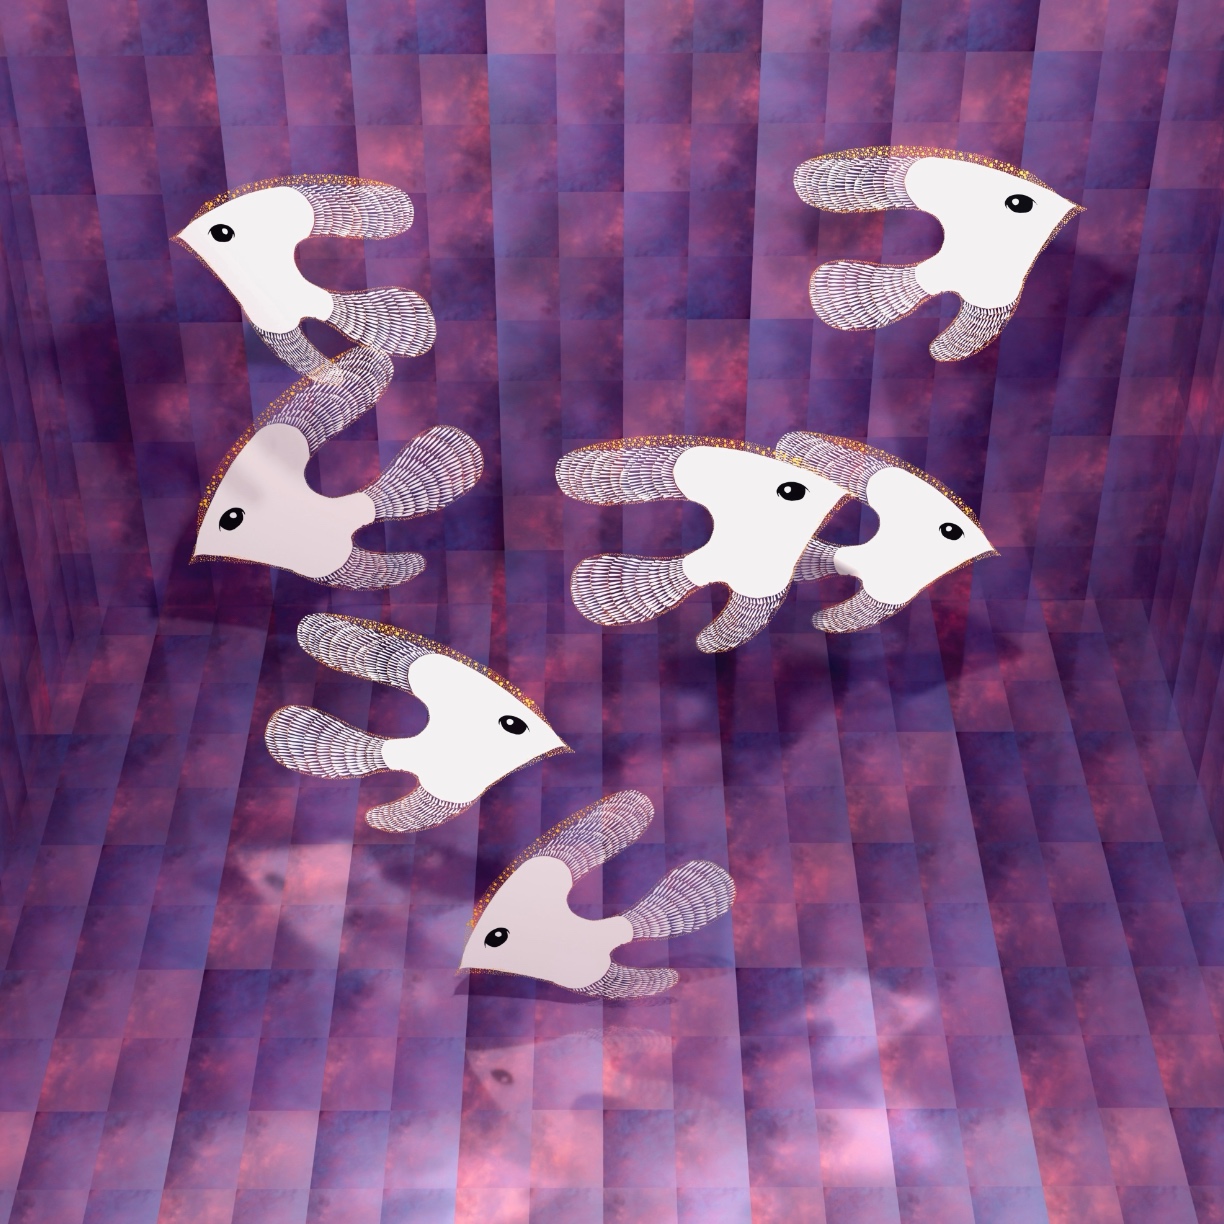 Atsushigraphのデジタルアート作品「Swim Purple」の画像です。